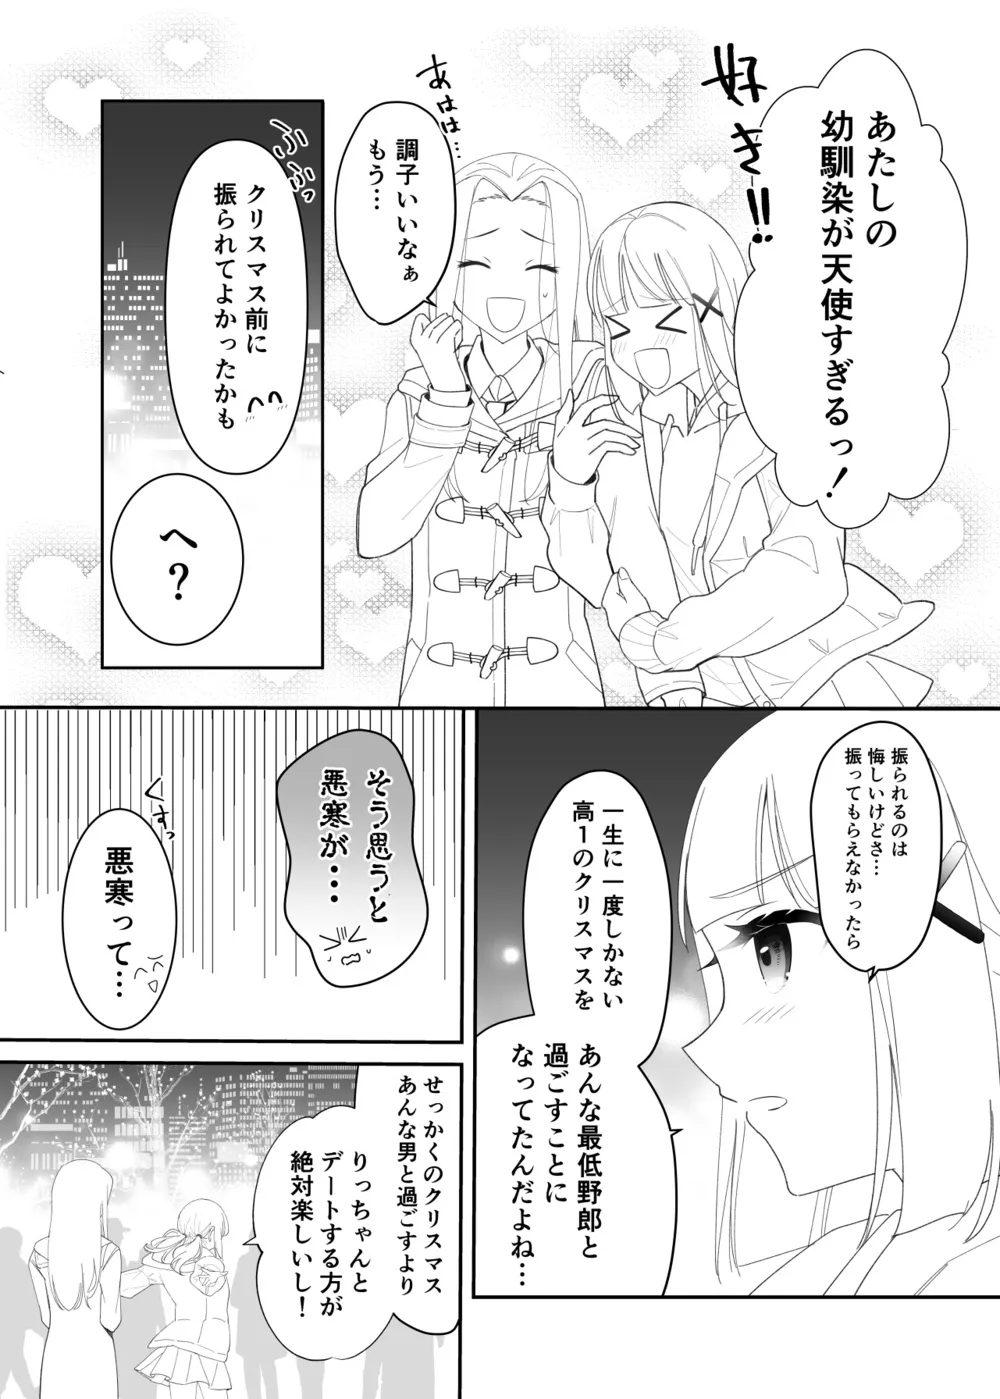 『拗らせ片想い幼馴染百合クリスマス漫画』(4/12)